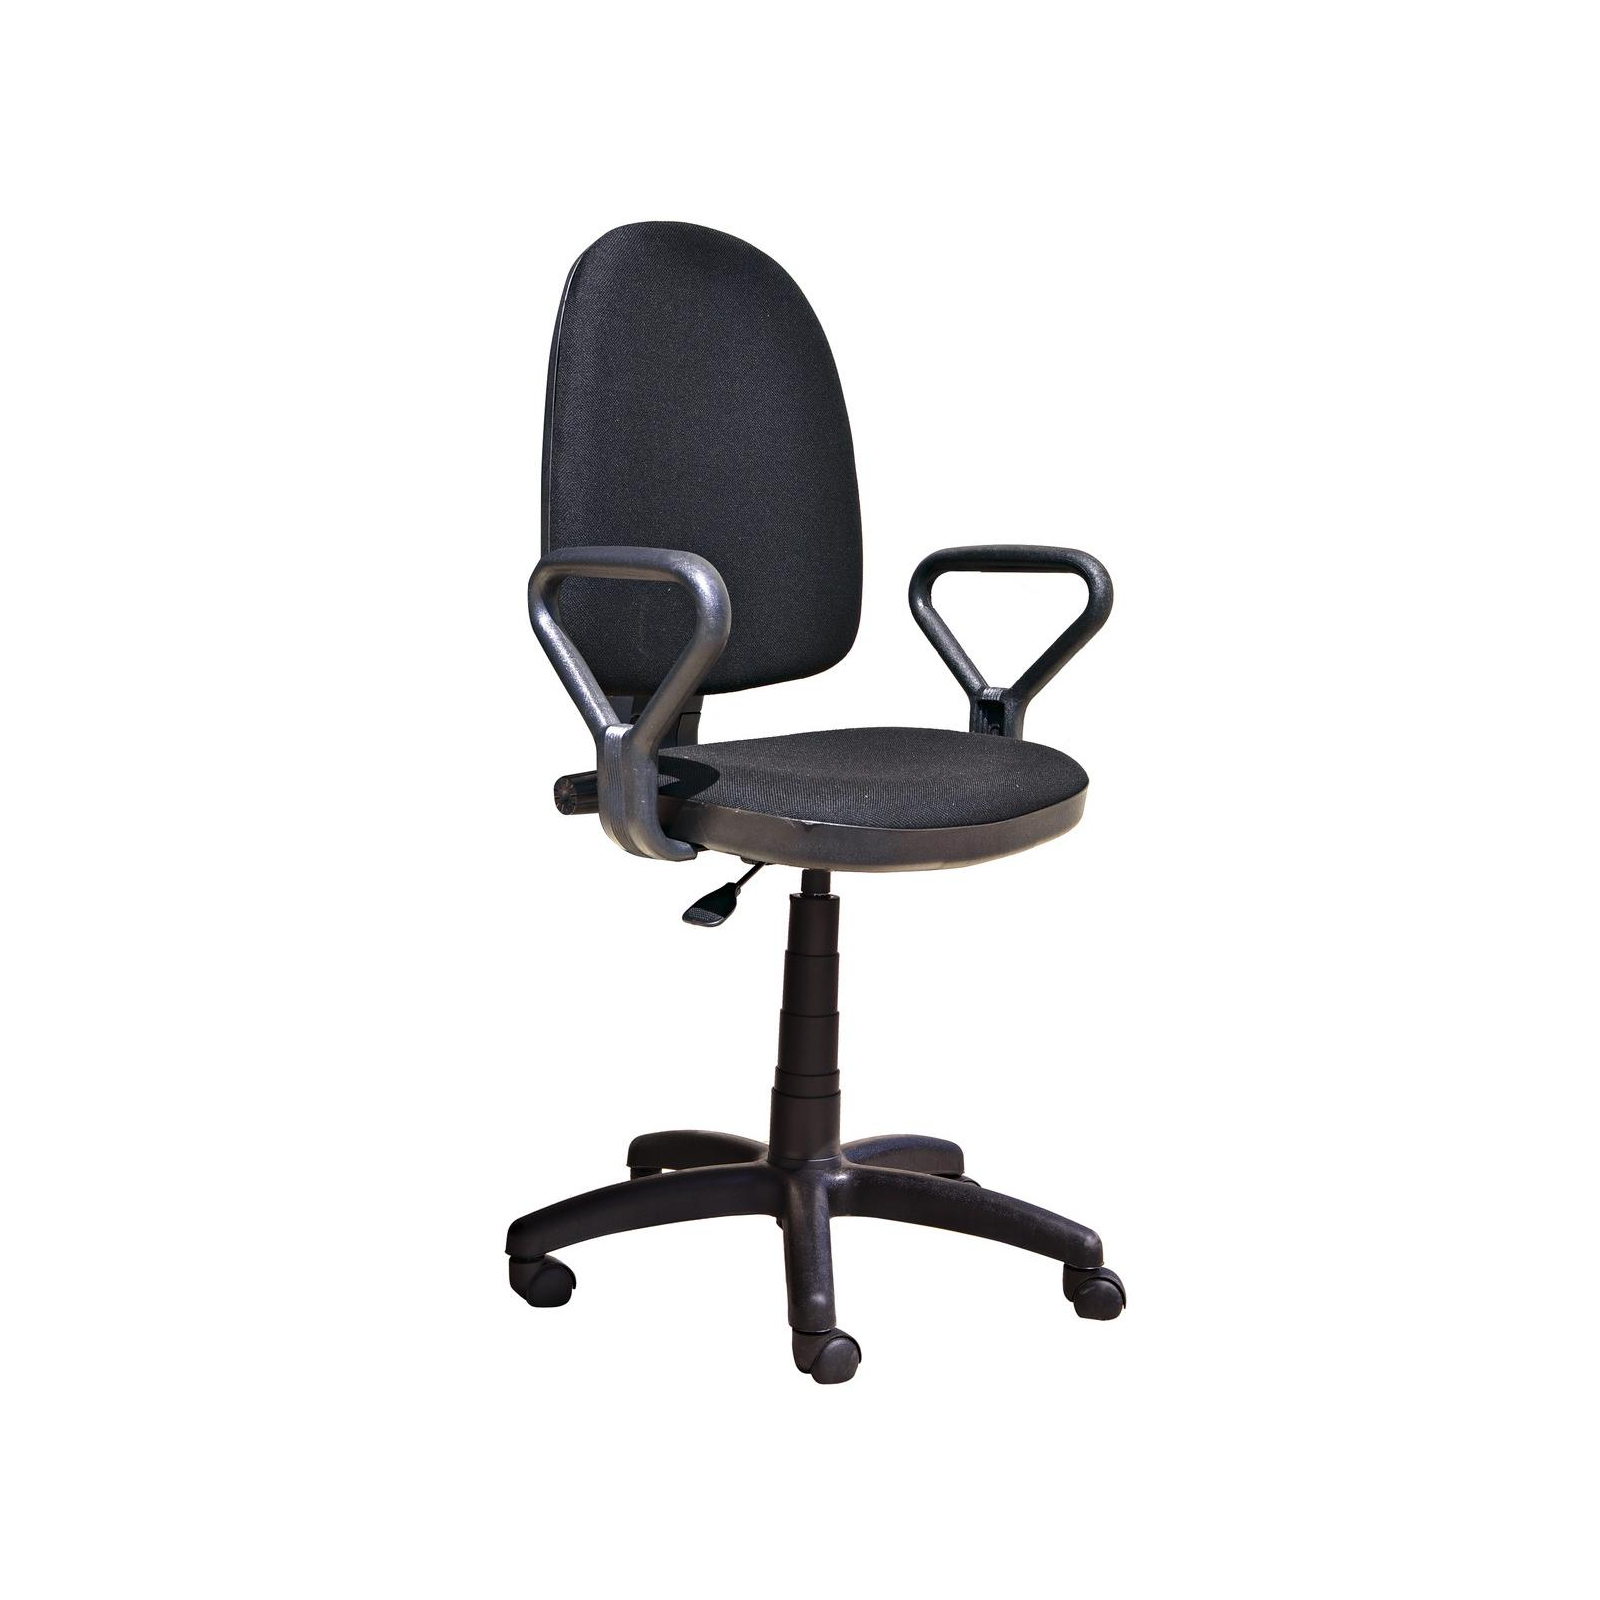 Офісне крісло Примтекс плюс Prestige GTP NEW C-11 Black (Prestige GTP NEW C-11)